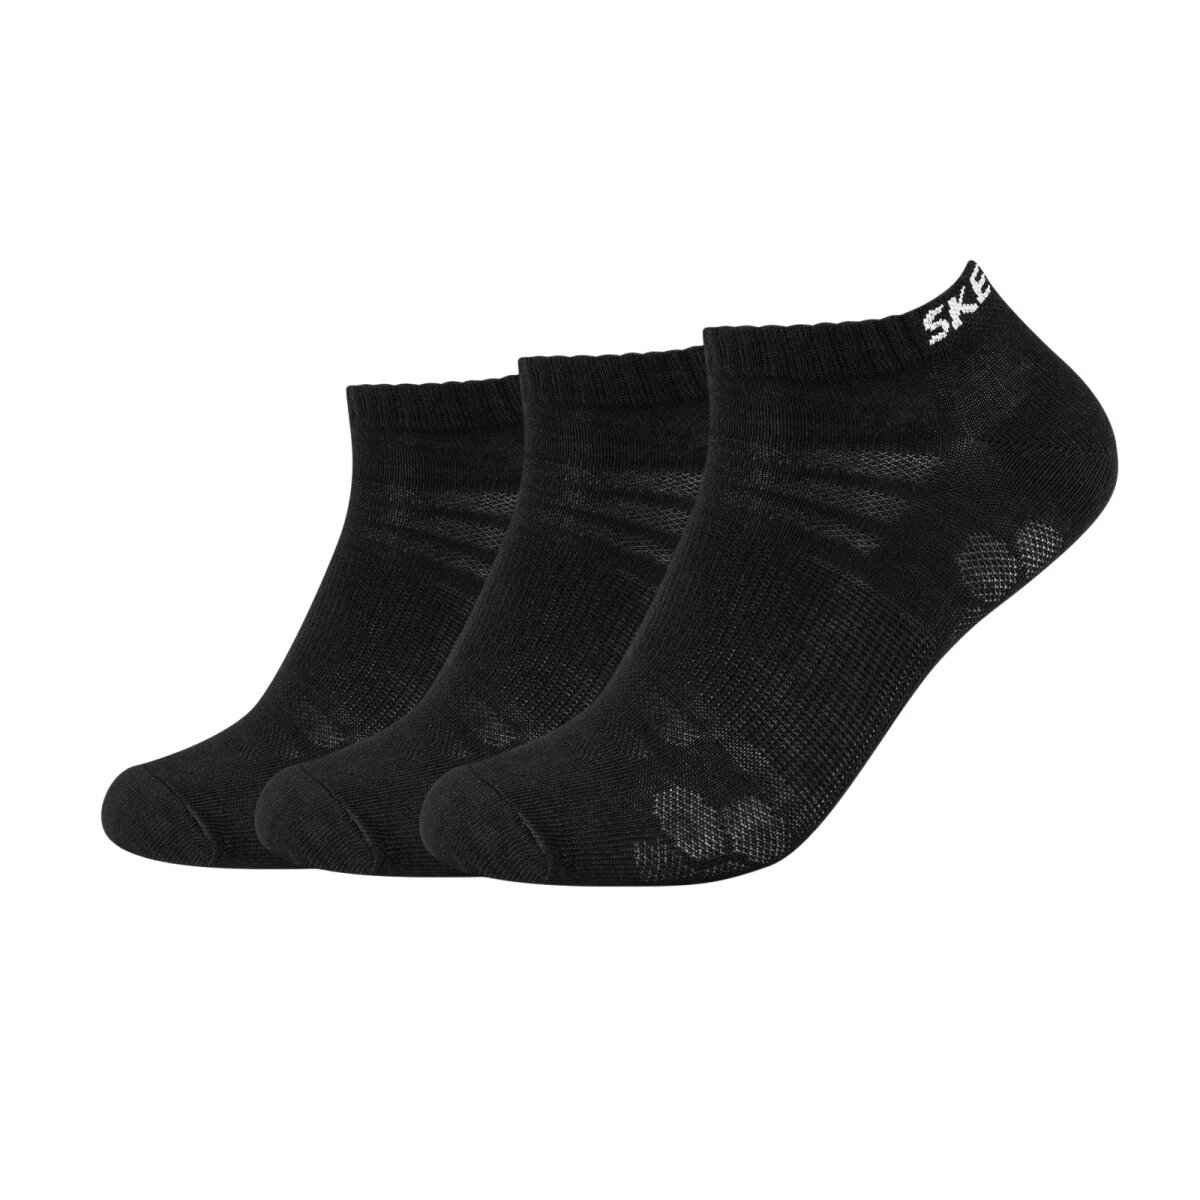 SKECHERS Sneaker Socken für Damen und Herren im 3er Pack, 10,45 €